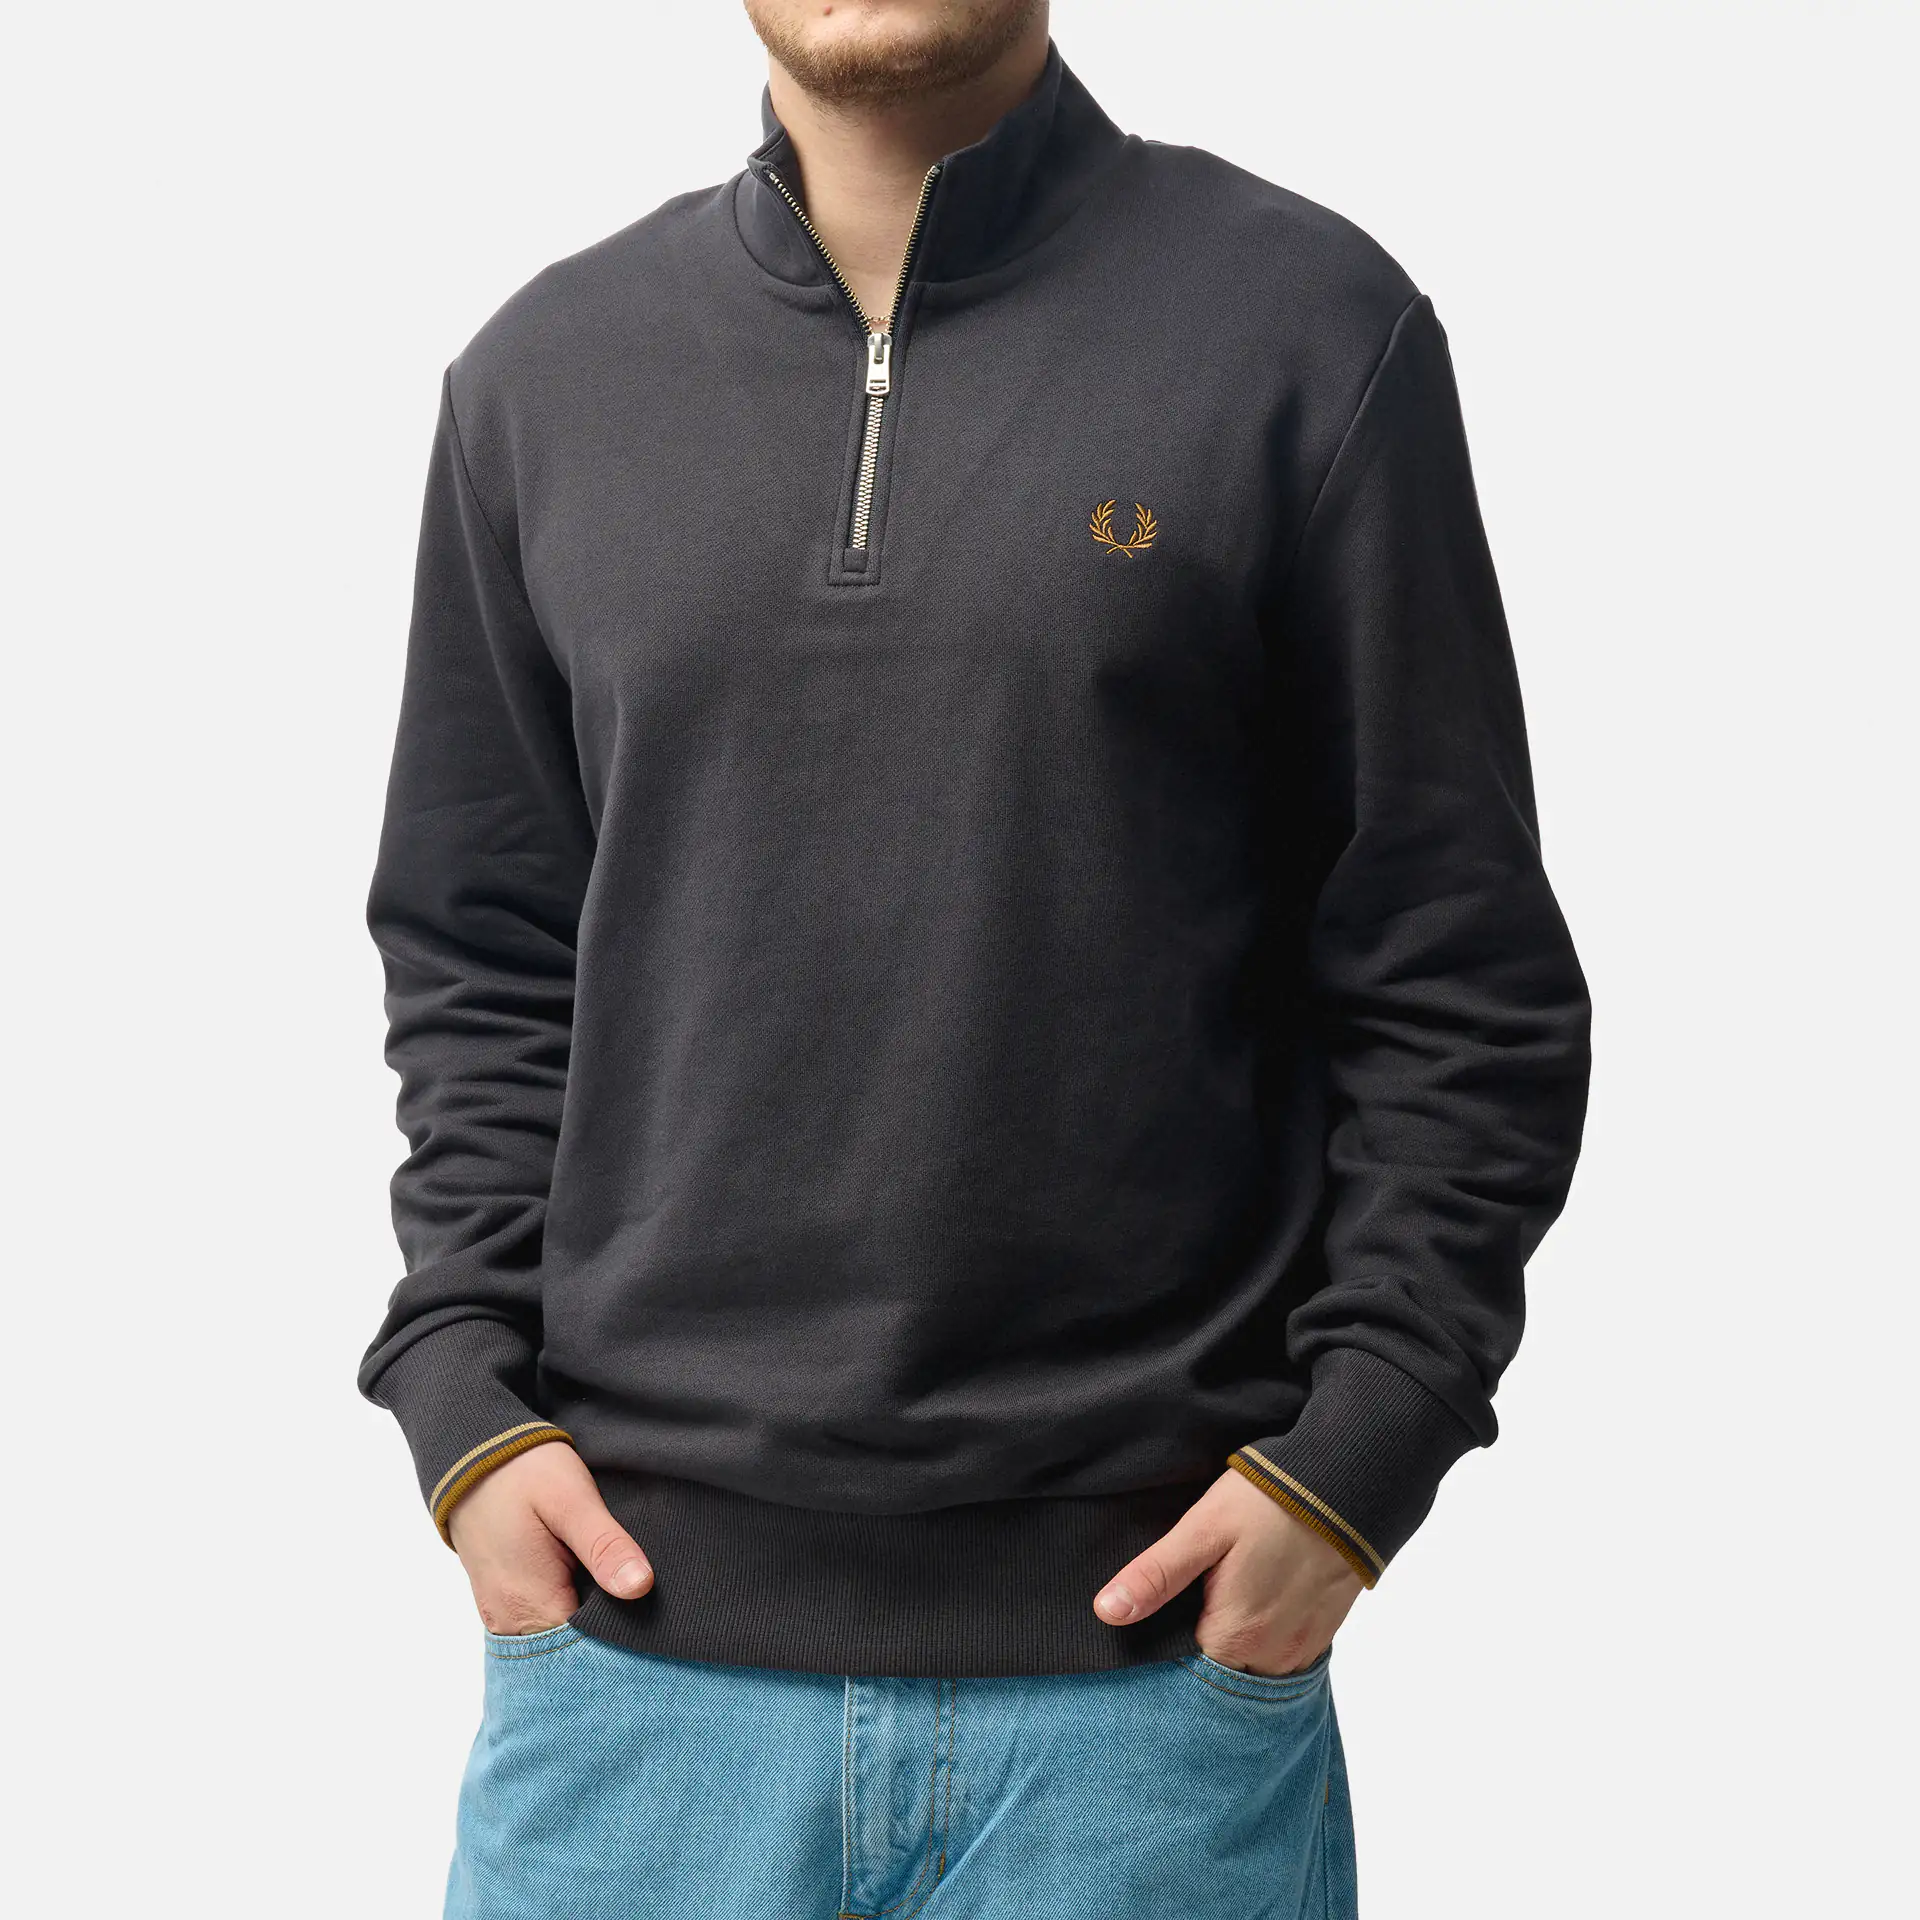 Männer für ✧ FORWARD FAST Pullover kaufen online bei